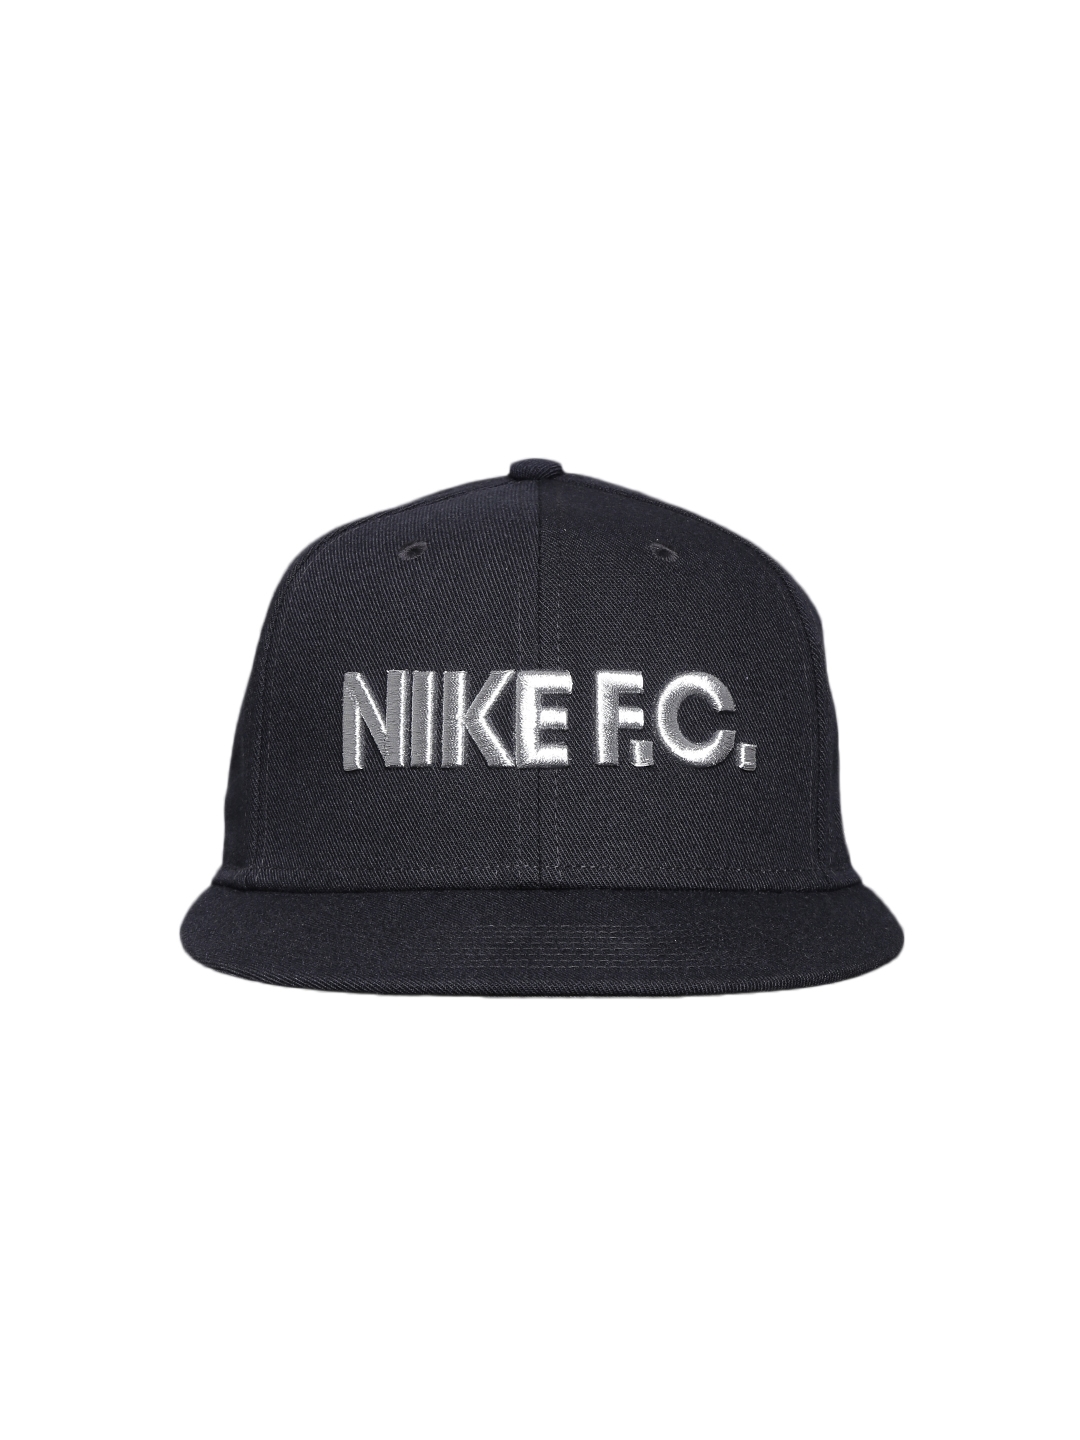 ijzer Voorspeller verzameling Buy Nike Unisex Black F.C. True Snapback Cap - Caps for Unisex 1110526 |  Myntra